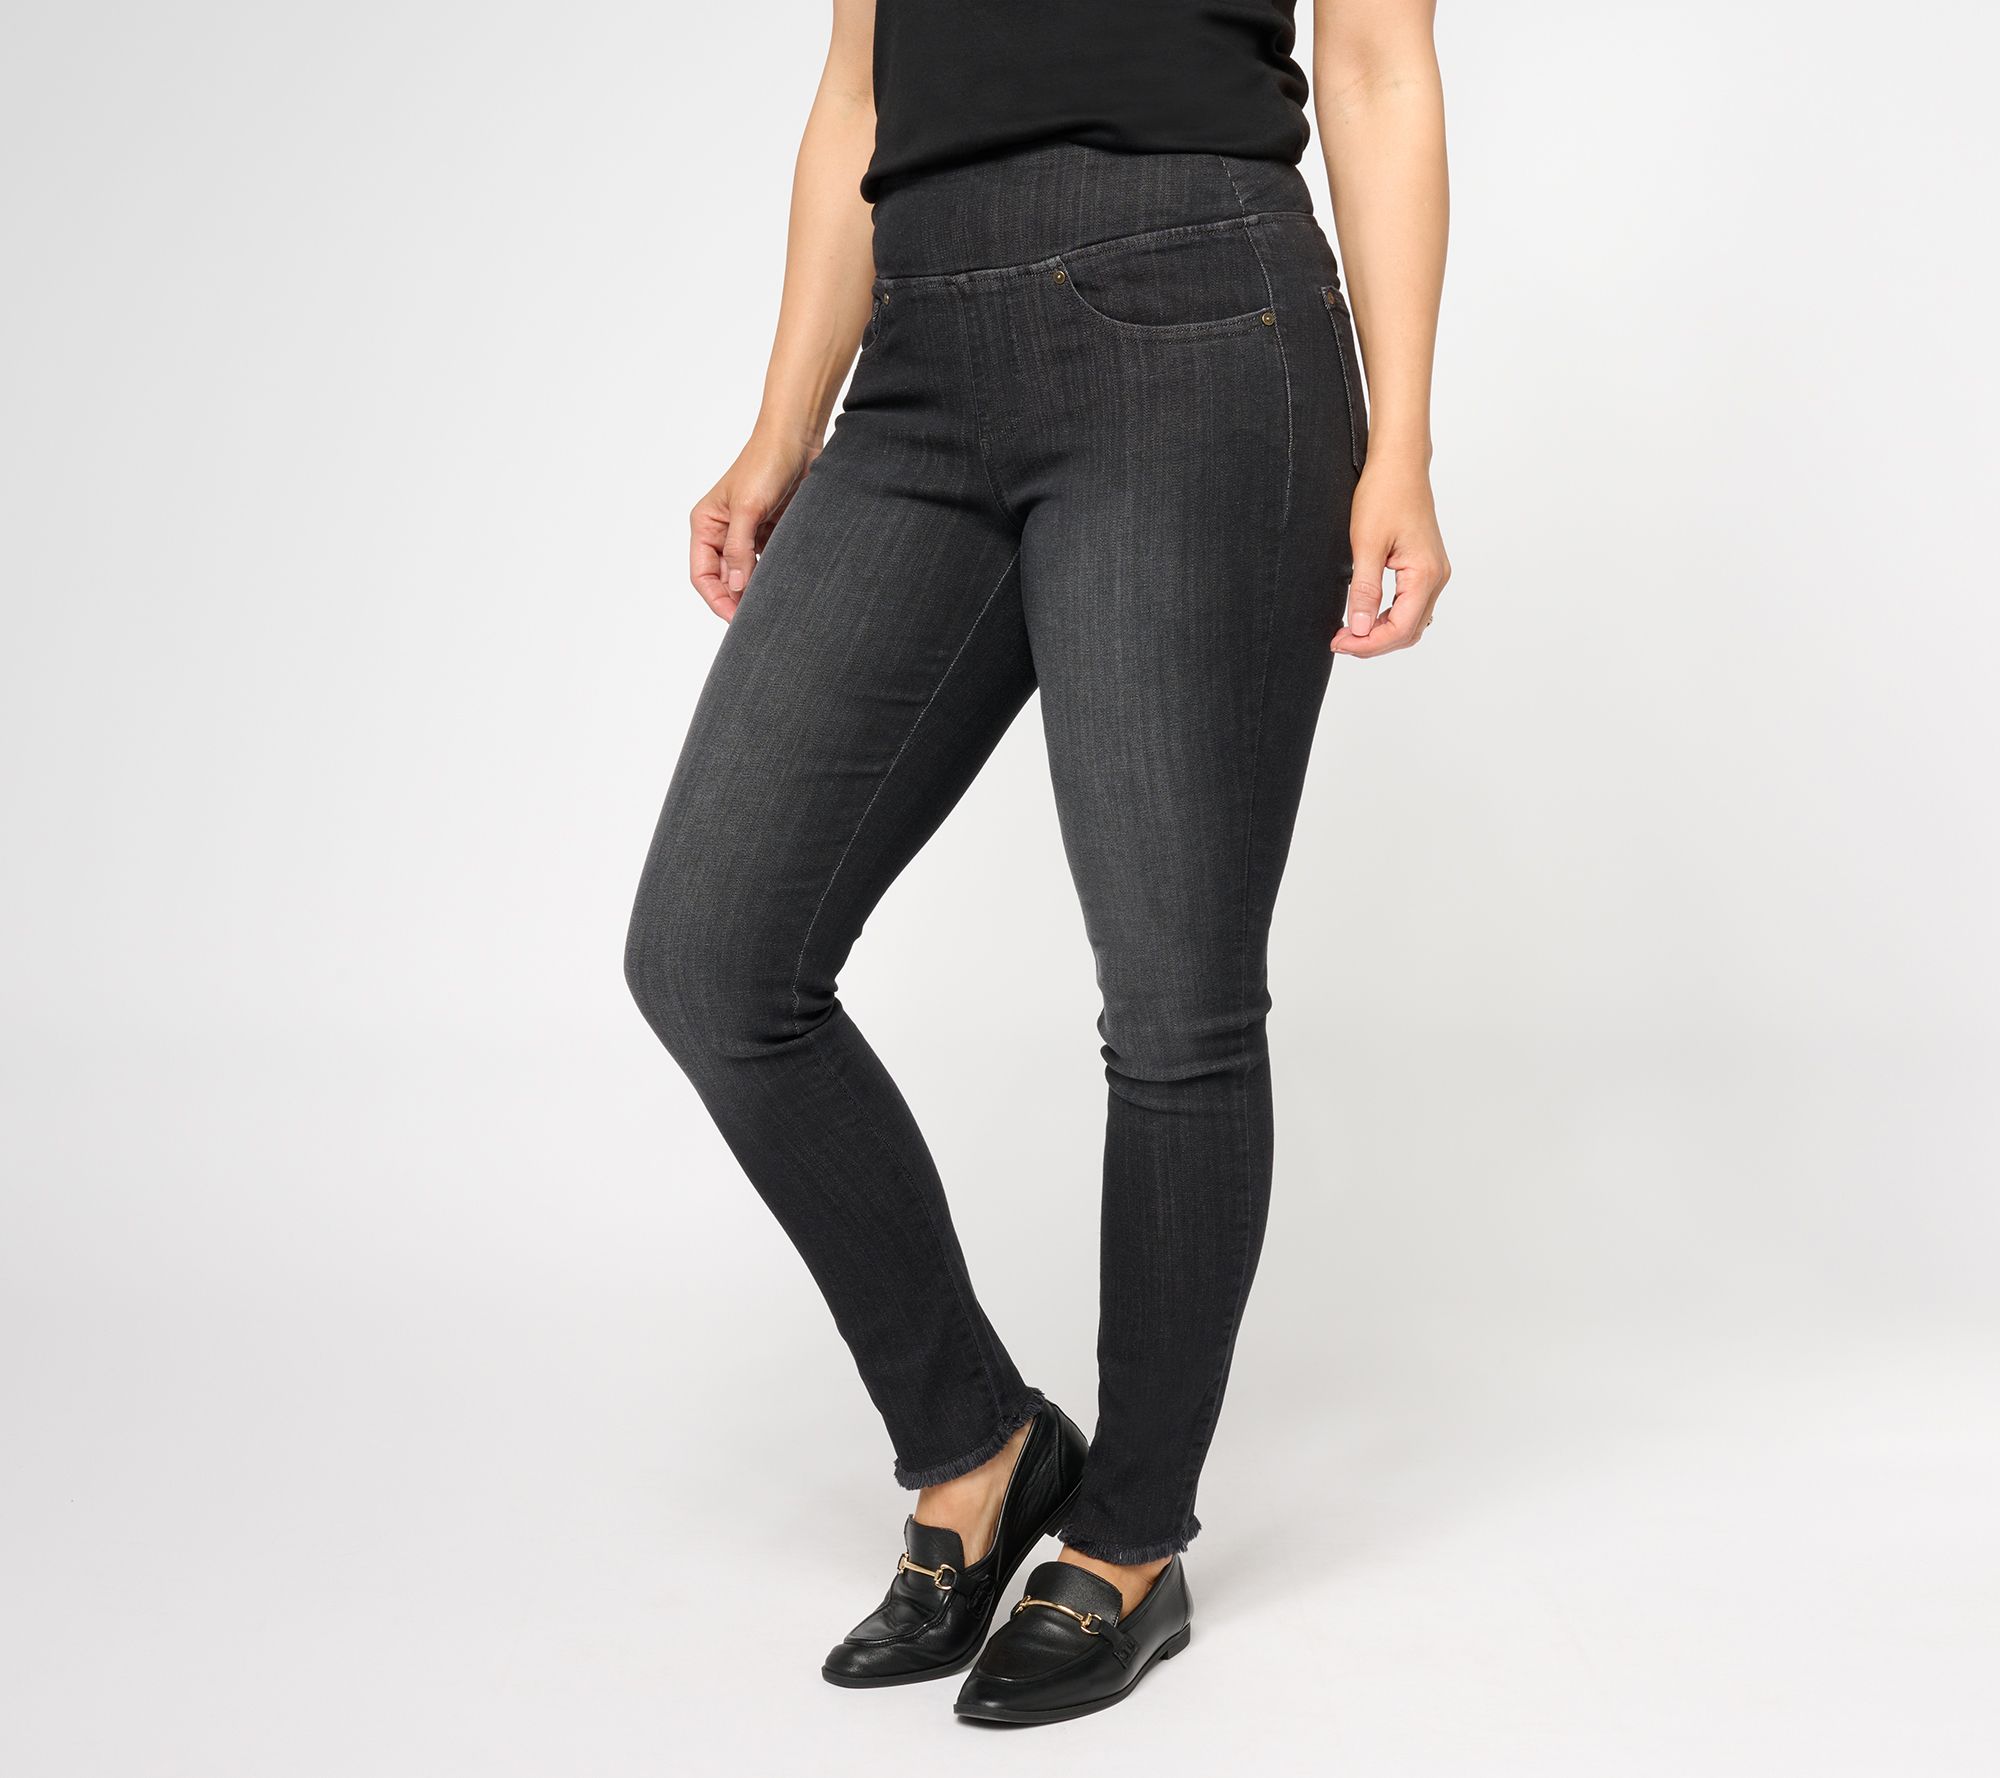 Juniors Women's SO Brand Black Jeggings Skinny Jeans … - Gem